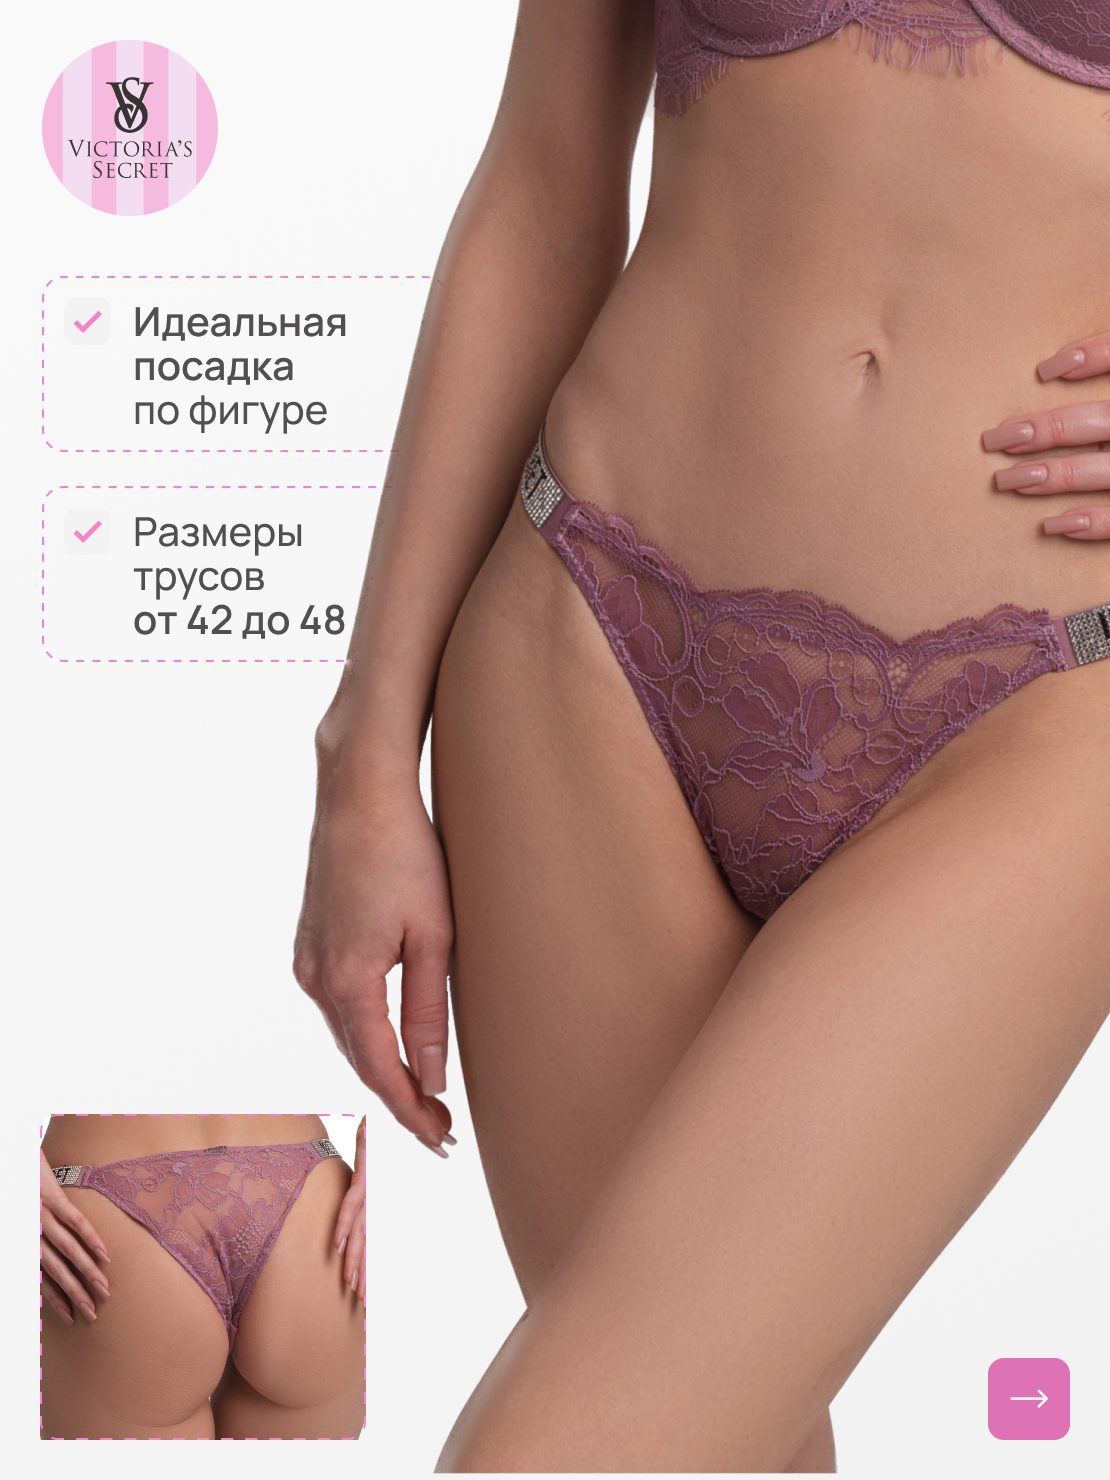 Трусы Victoria's Secret, размер M, фиолетовый, лиловый